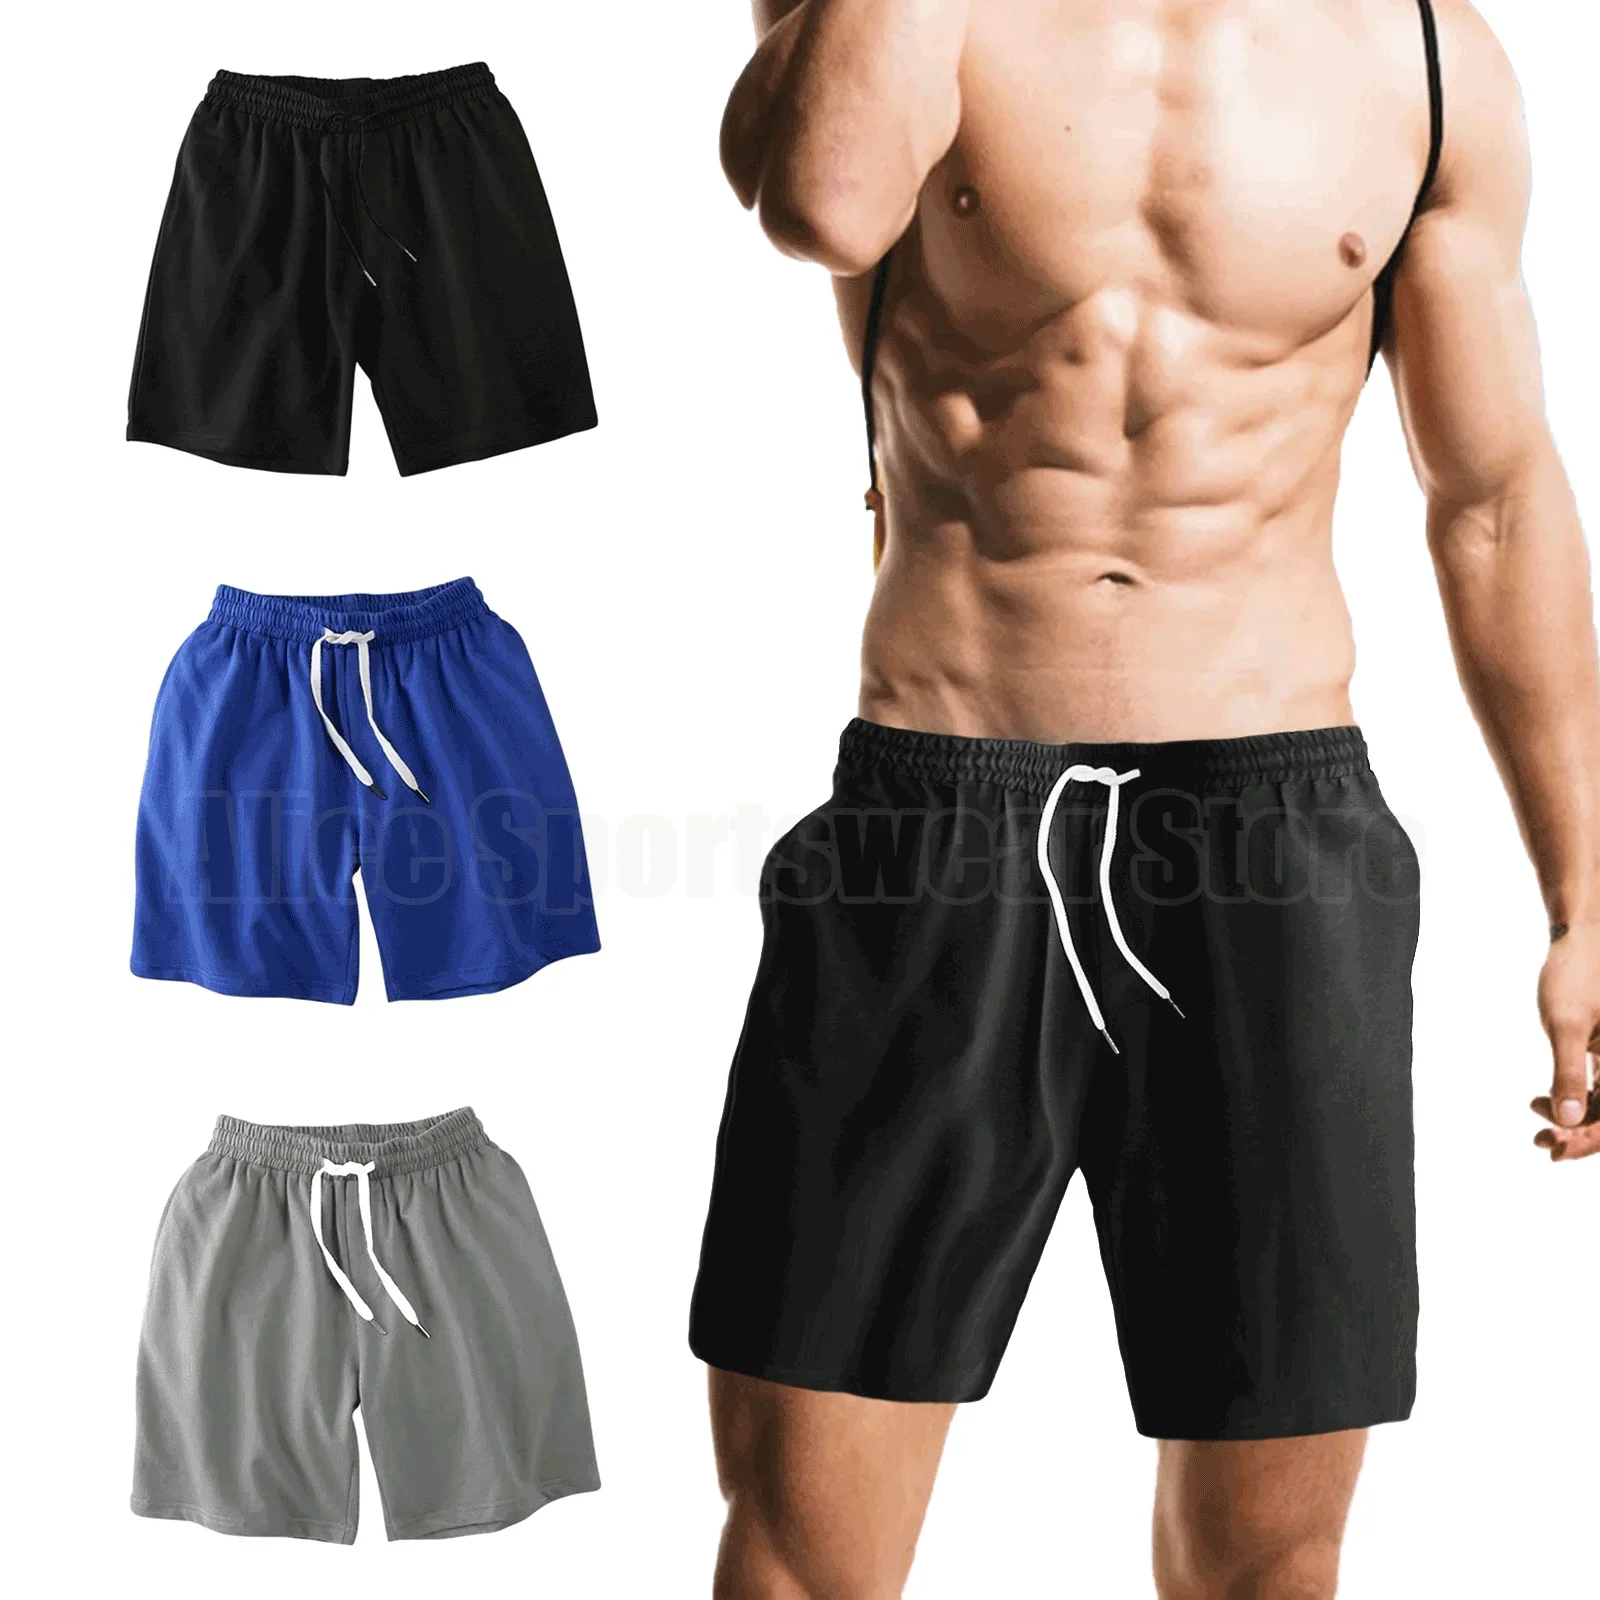 

Шорты мужские для бега, повседневная одежда, однотонные спортивные штаны из полиэстера в японском стиле, с эластичным поясом, черные, белые